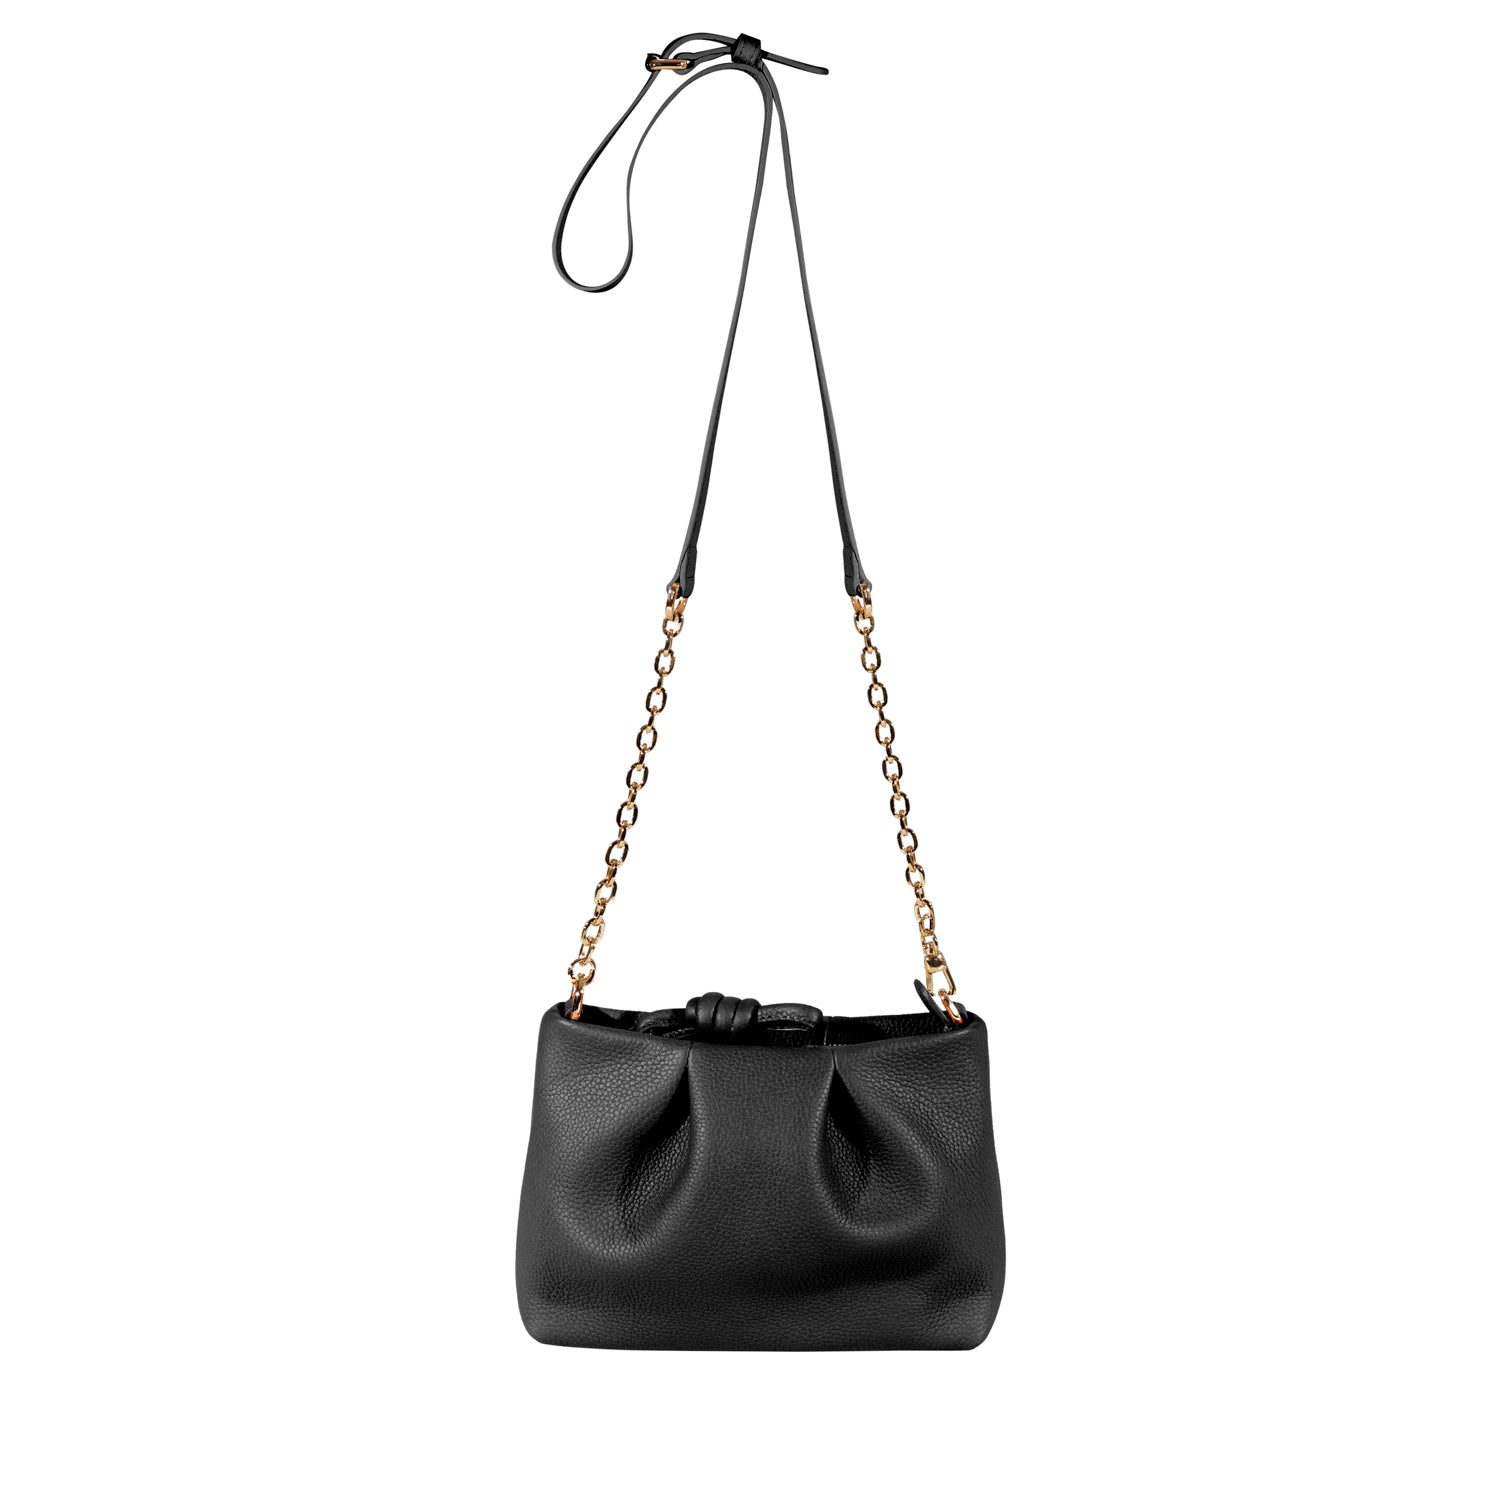 The Most Versatile Designer Handbags | Esin Akan